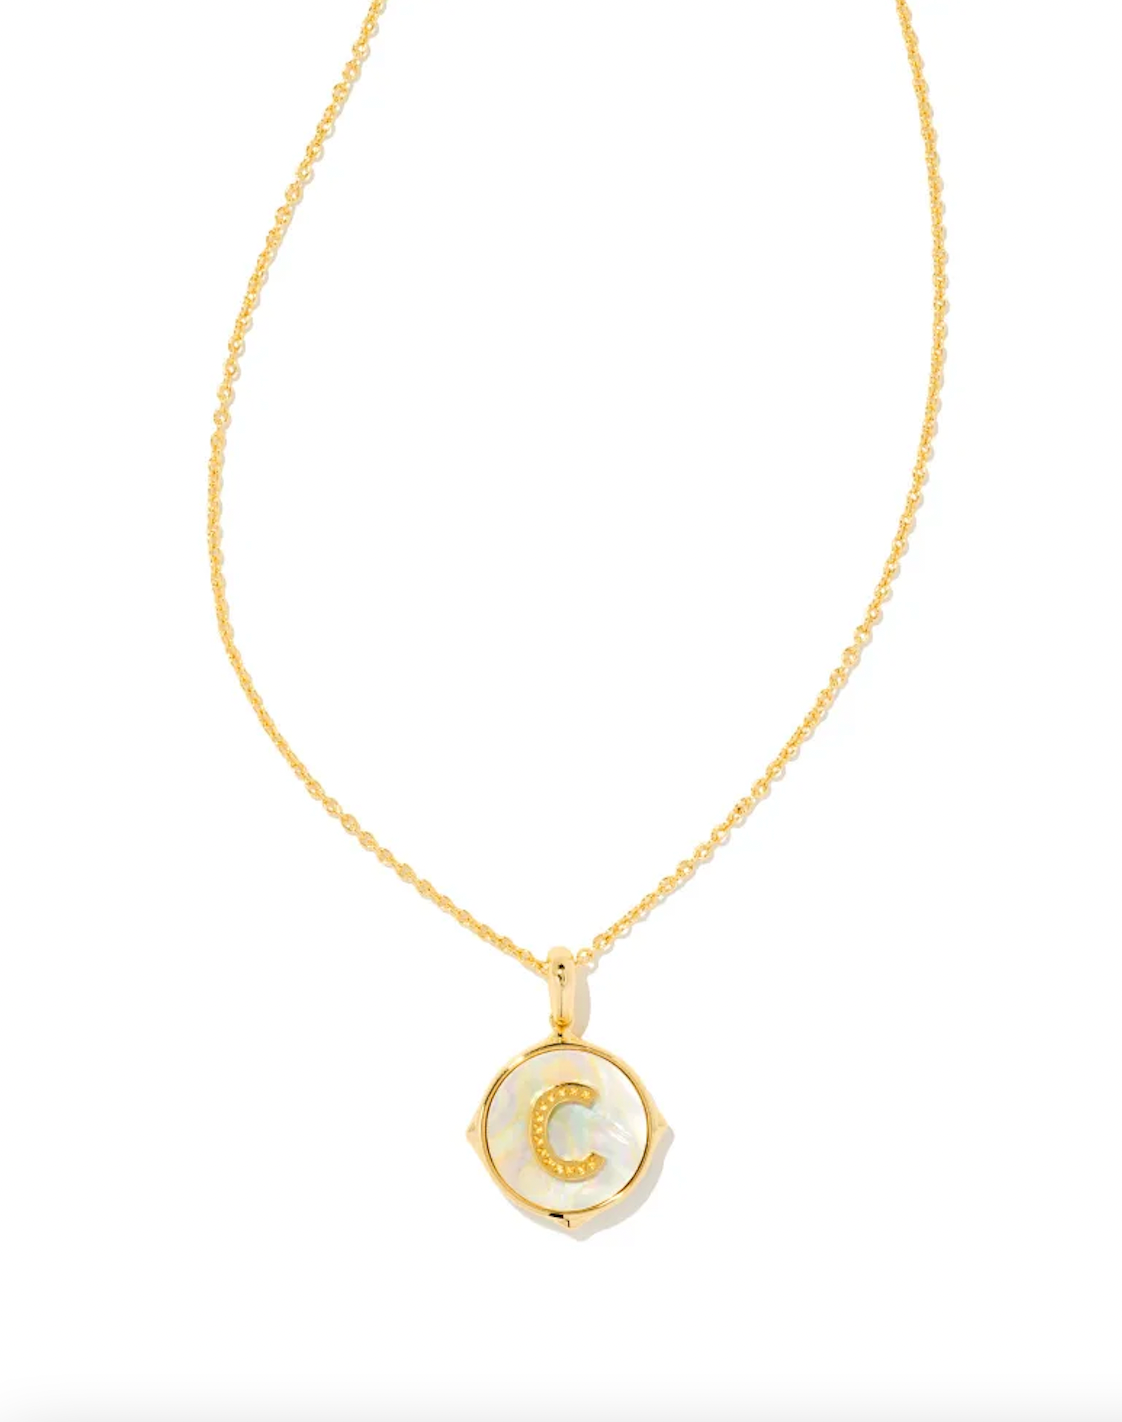 Buy Letter C Gold Pendant| kasturidiamond.com